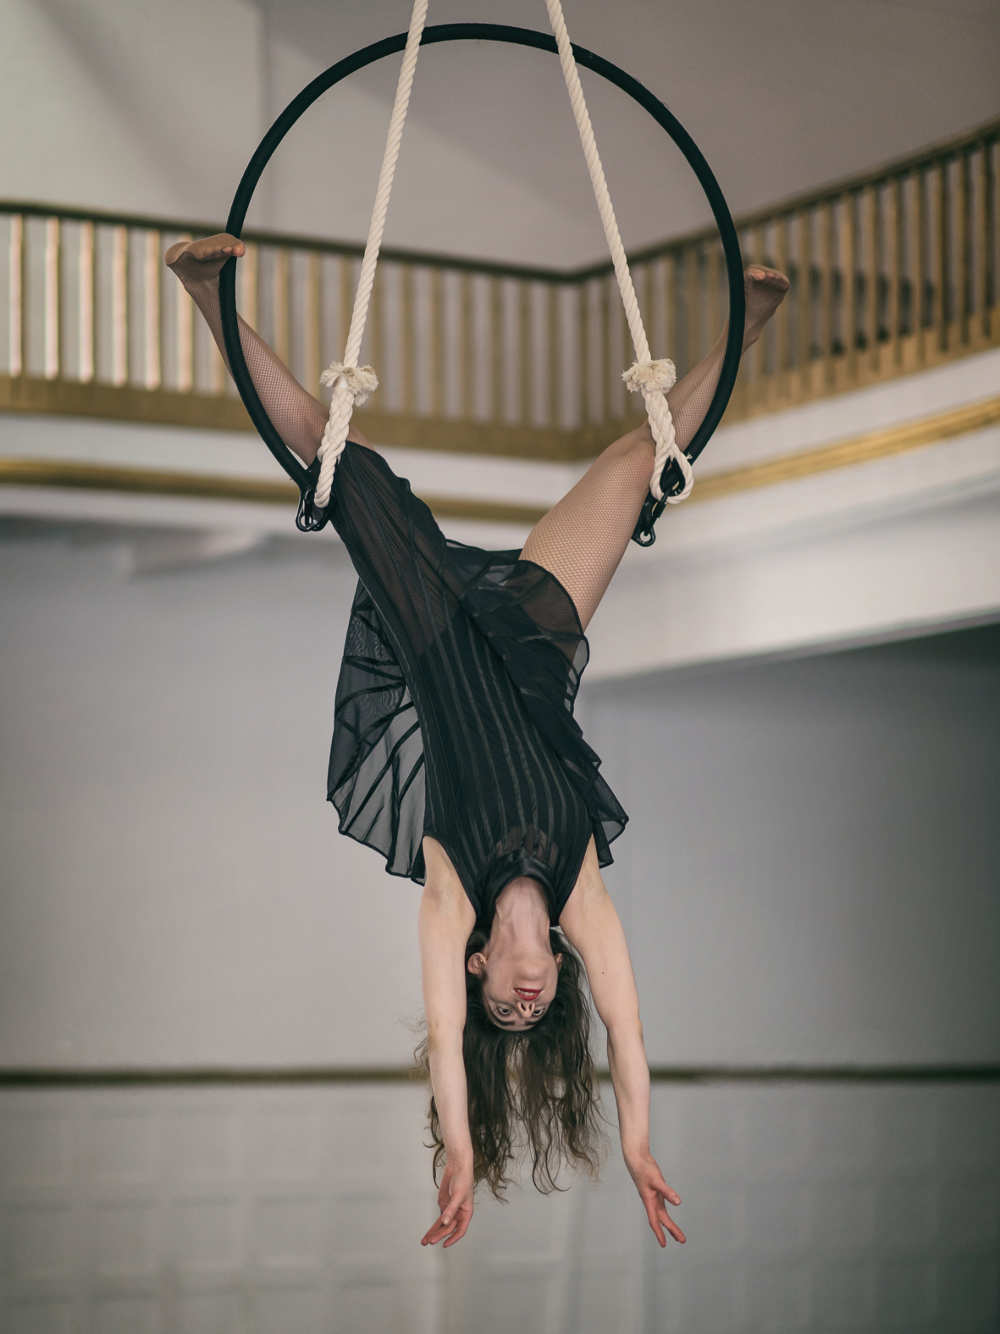 Elena-aerial-hoop-dancing